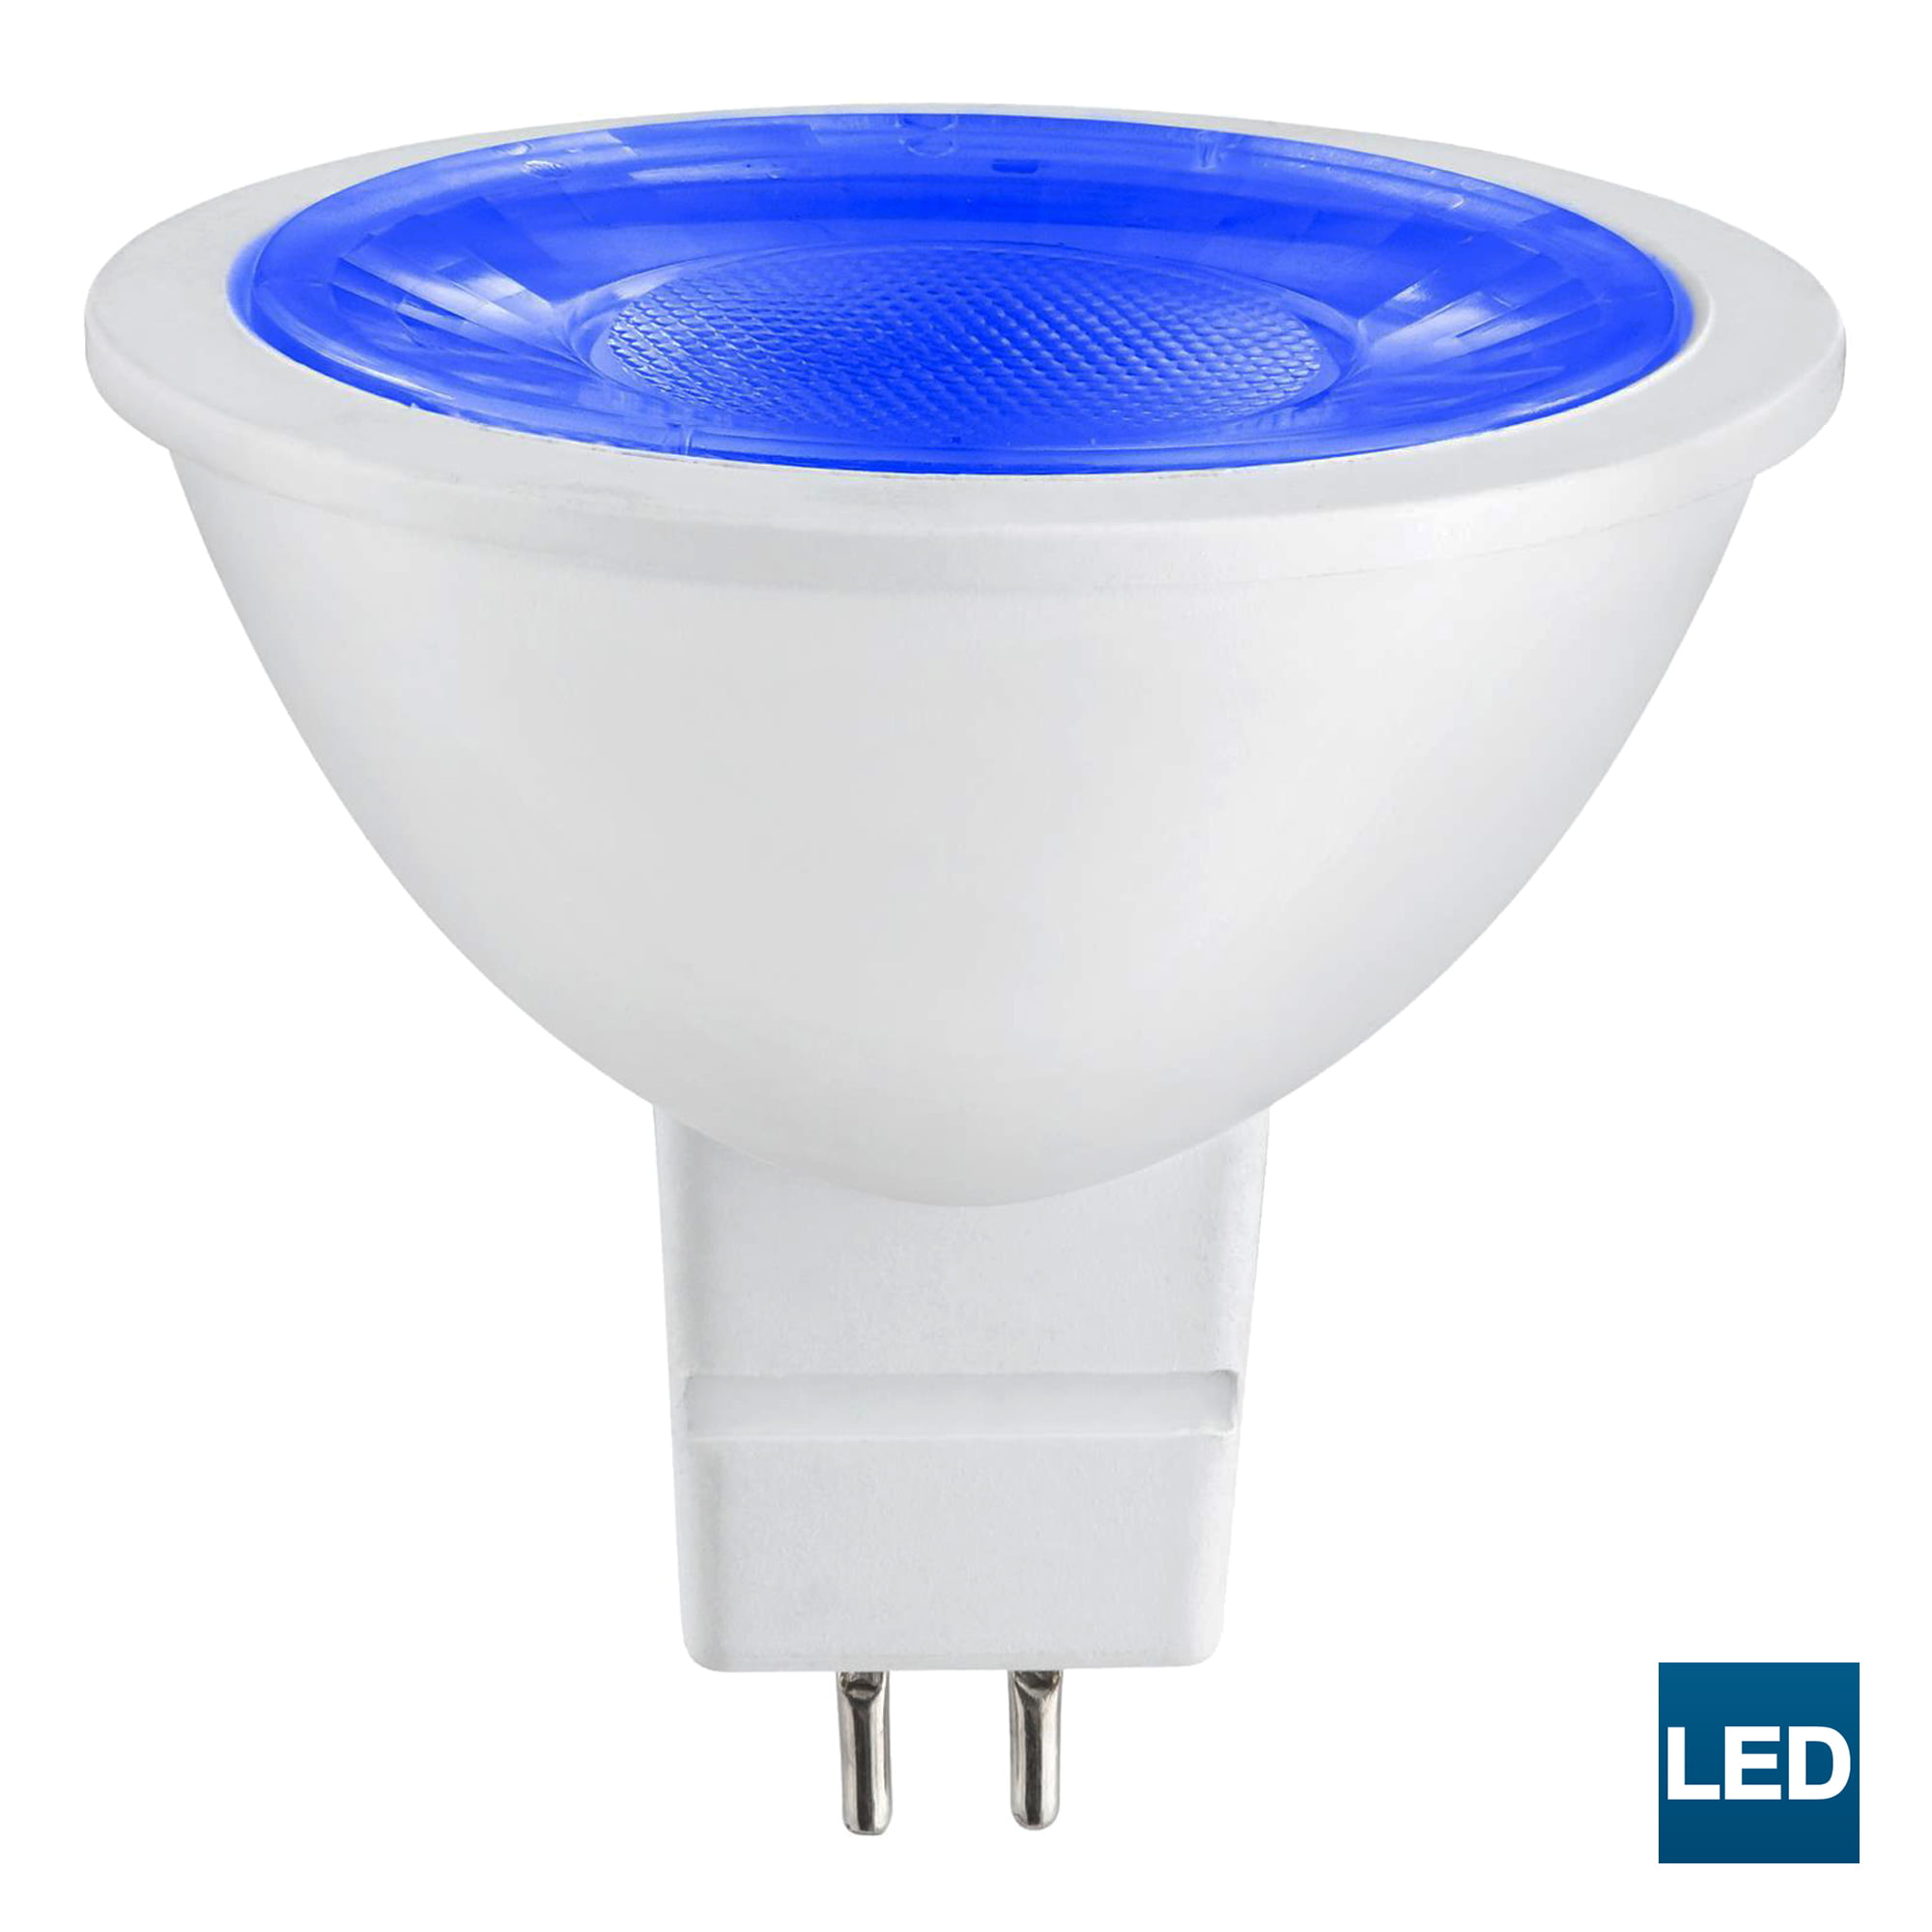 SUNLITE 3w 12v LED MR16 GU5.3 25-Watt Equivalent Blue Light Bulb -